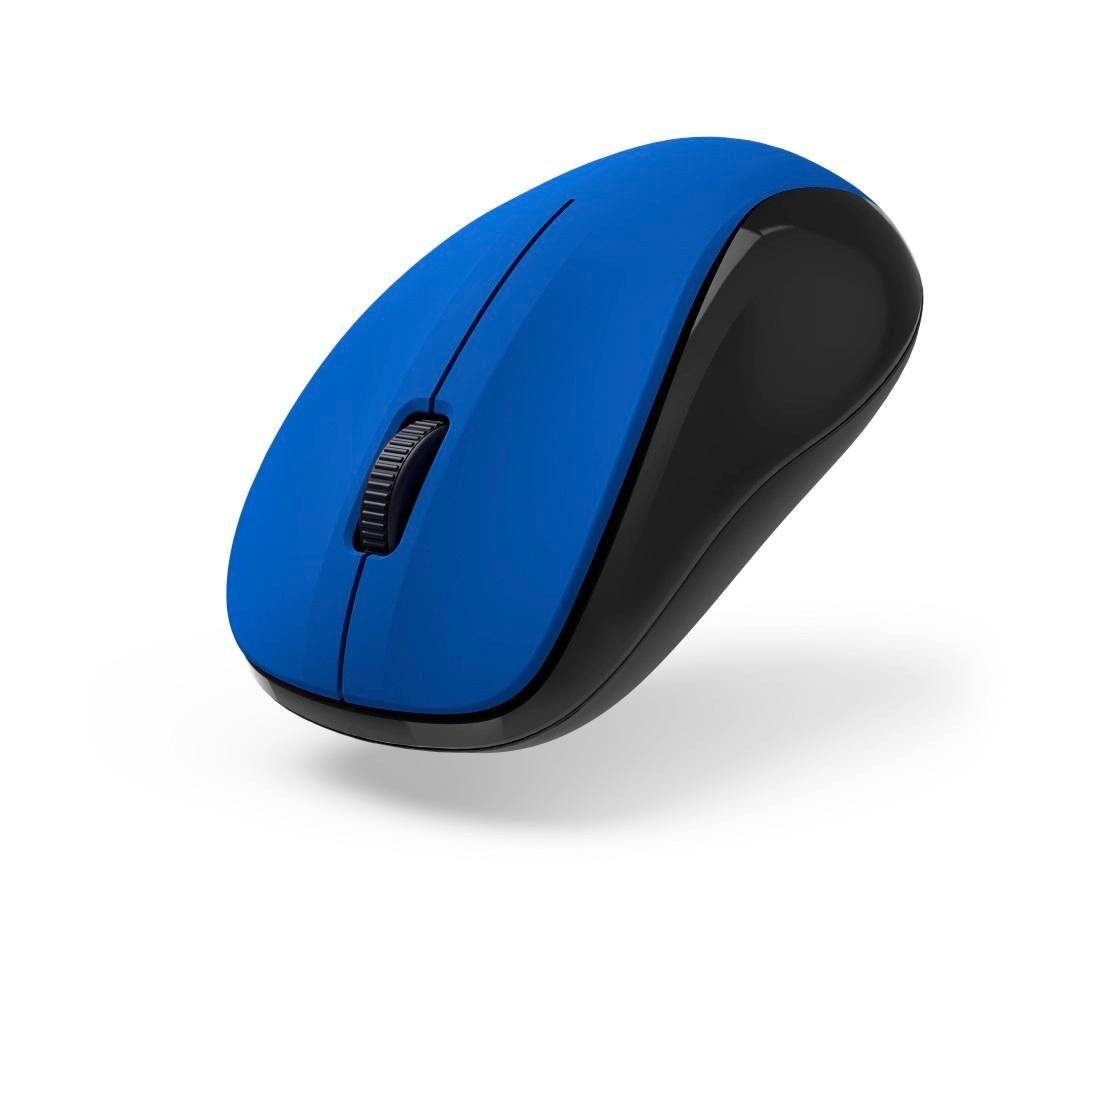 V2", Hama Empfänger geräuschlos, "MW-300 Funkmaus 3 USB Optische Tasten Maus blau